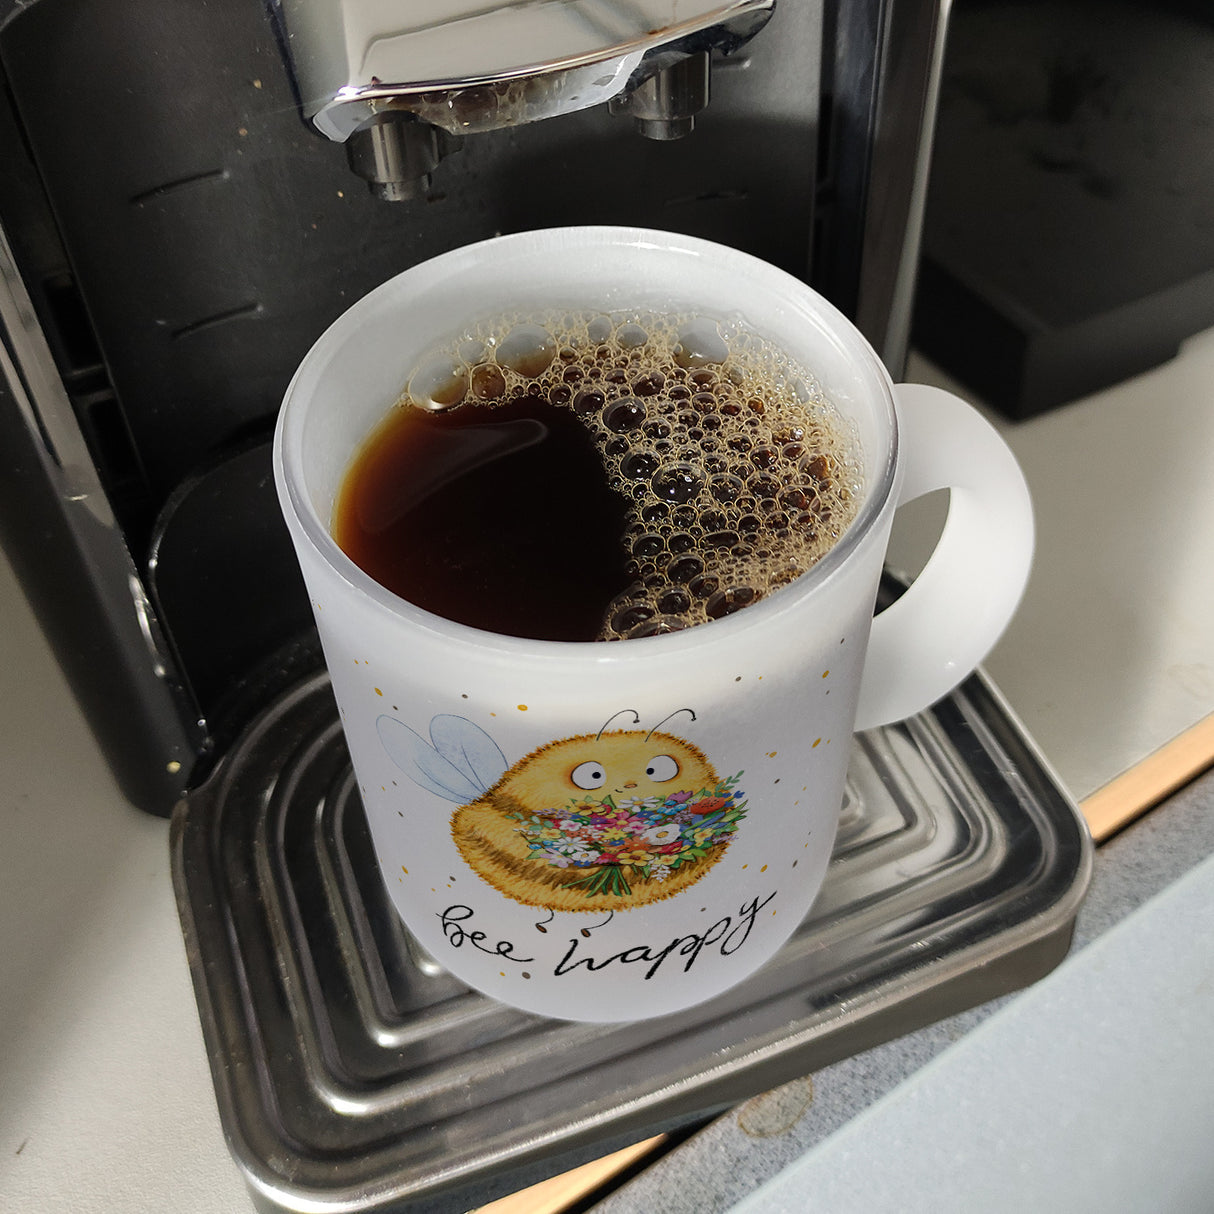 Pummel Biene Kaffeebecher mit Spruch Bee happy